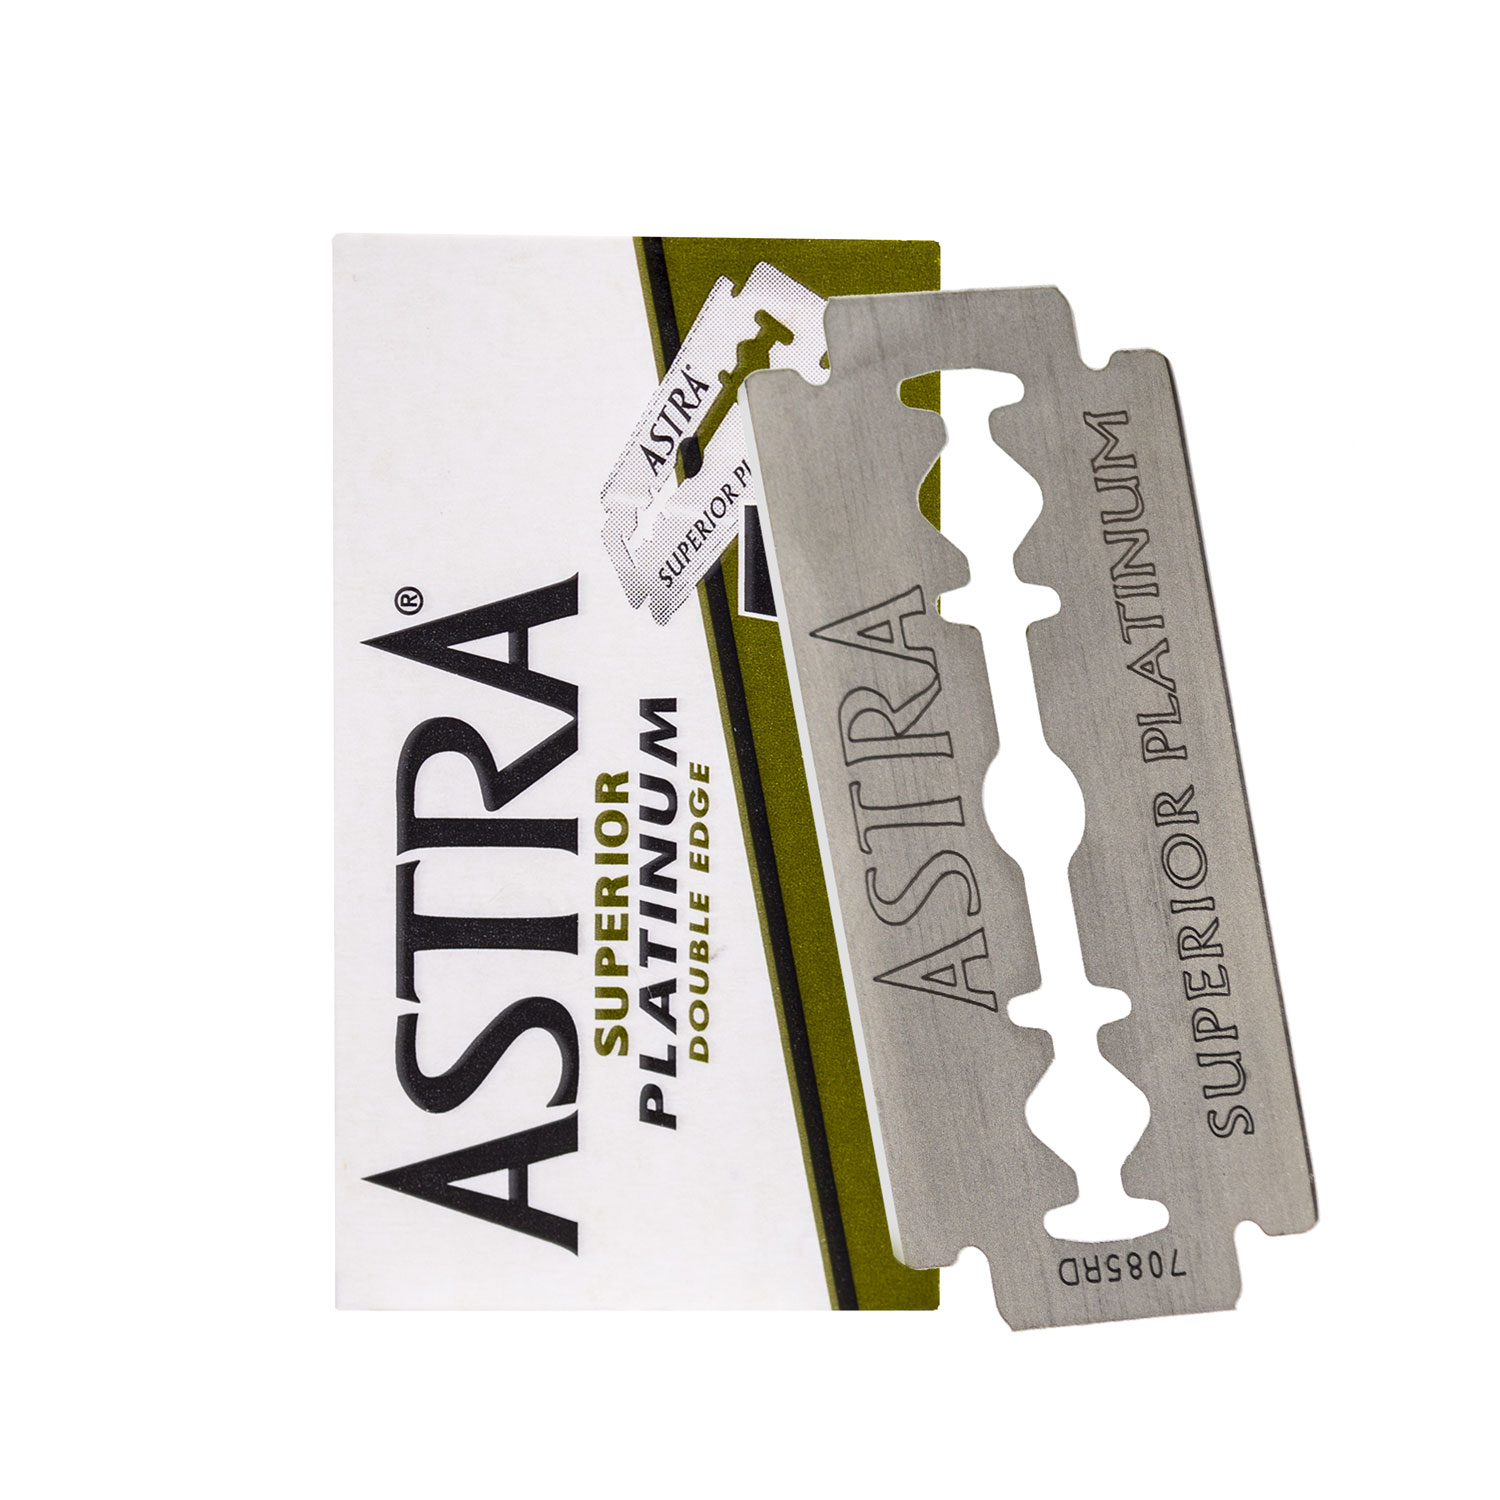 Astra - Superior Platinum - 5 Rasierklingen für traditionelle Rasierhobel